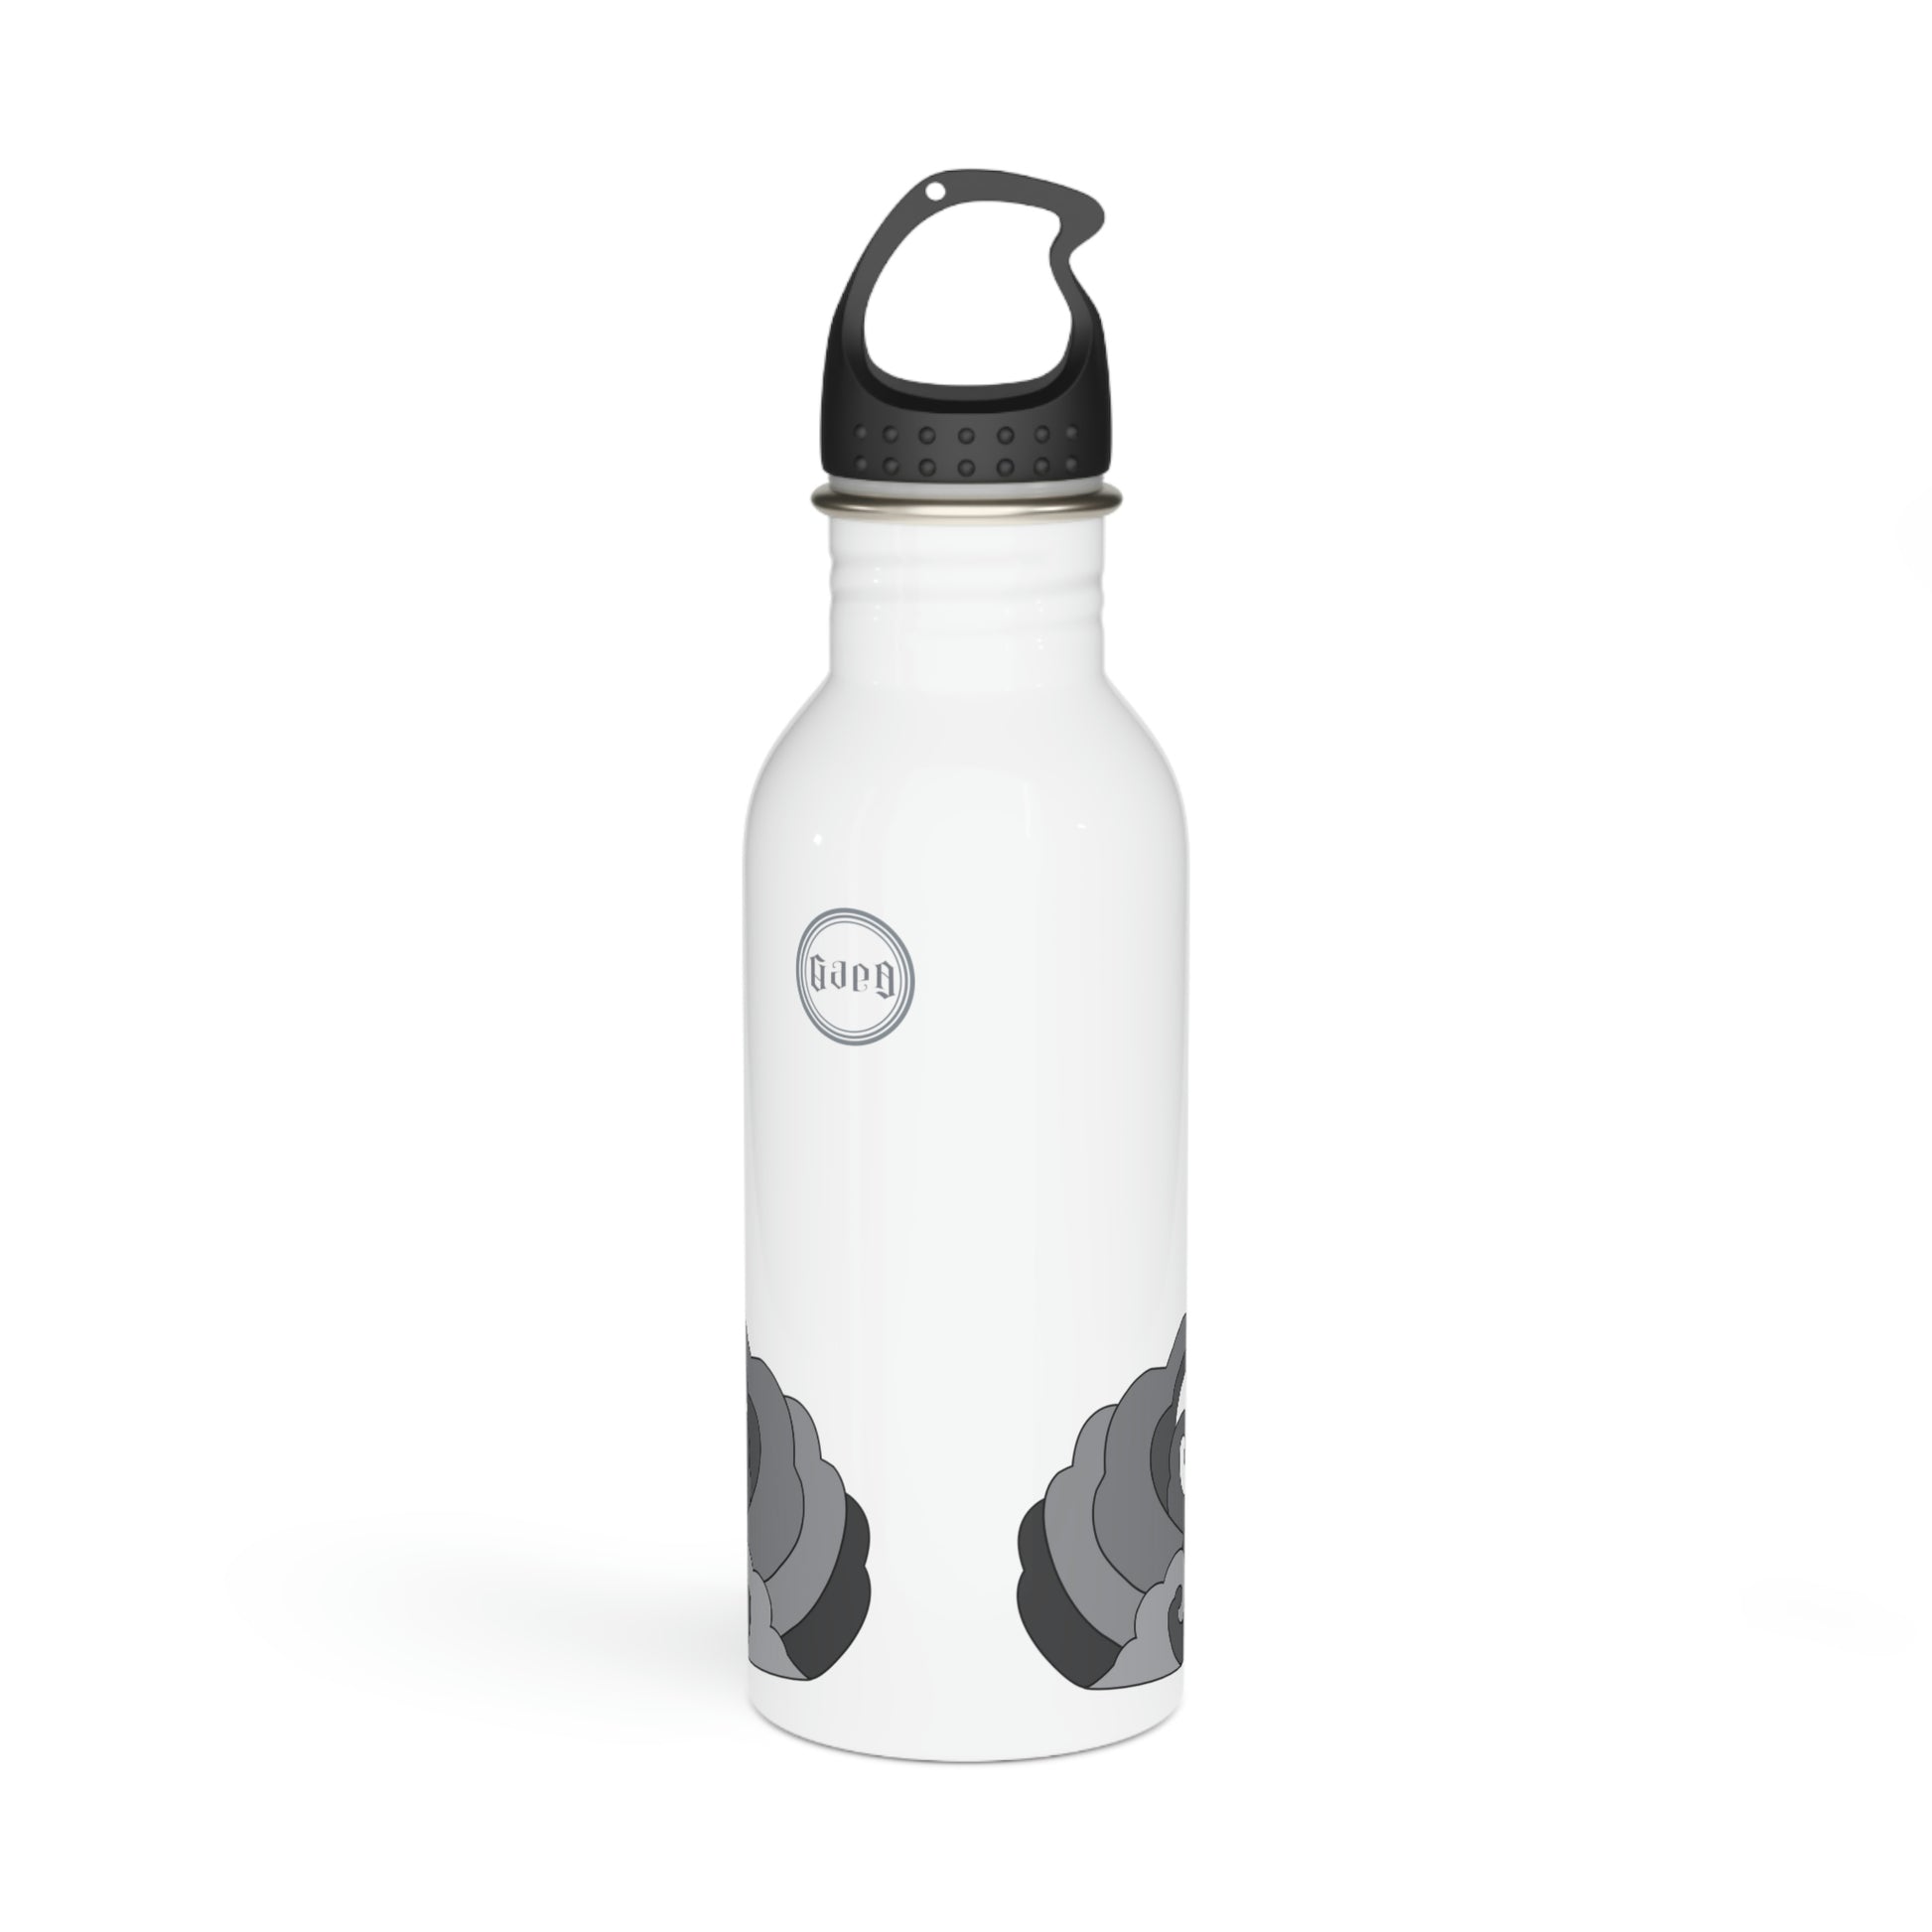 Lotus Om Stainless Steel Water Bottle